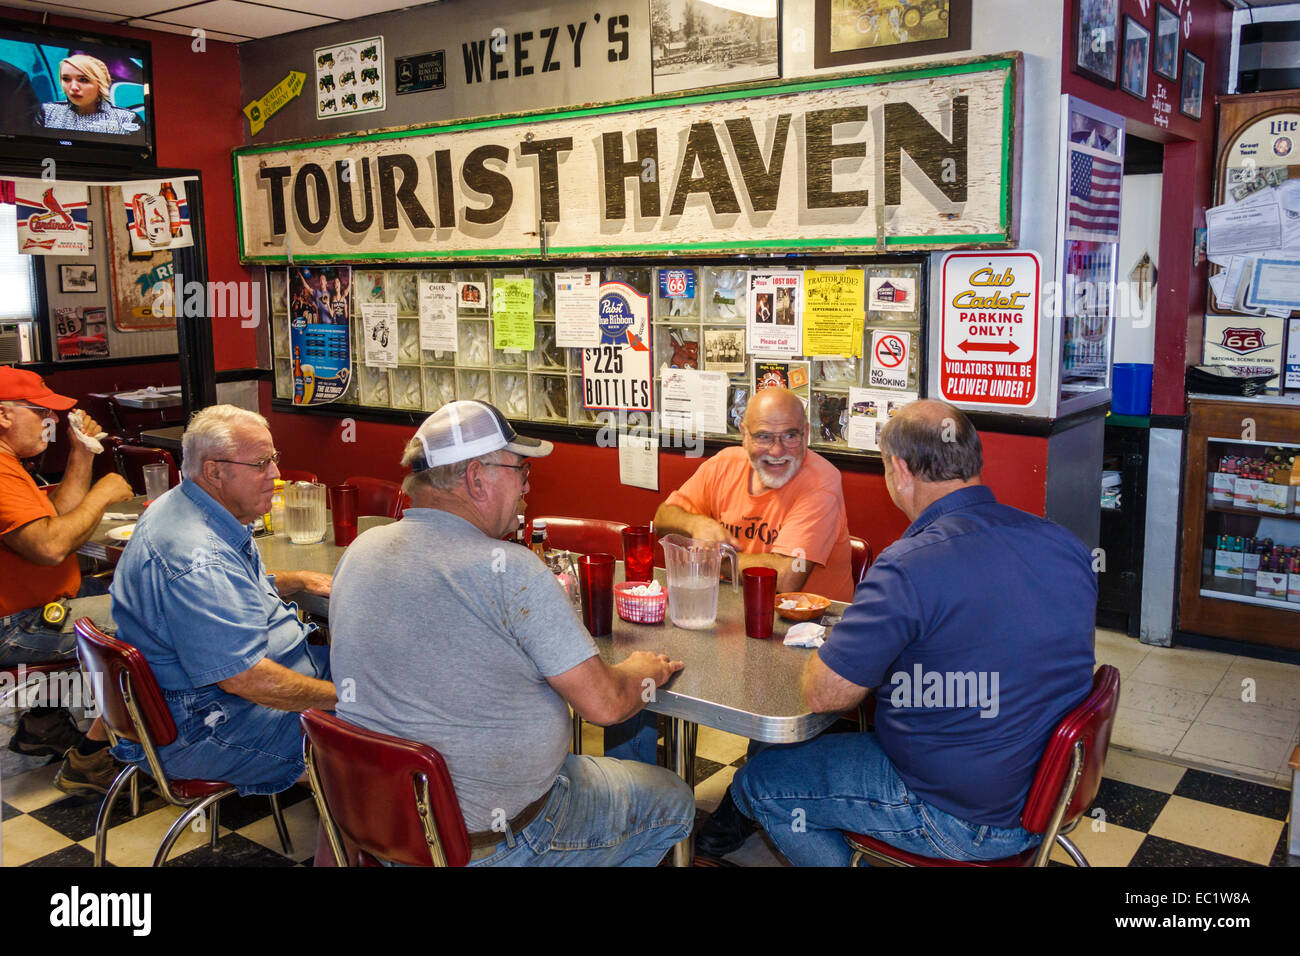 Illinois Hamel, autoroute historique route 66, Weezy's, restaurant restaurants repas café cafés, intérieur, table, homme hommes hommes, seniors citiz Banque D'Images